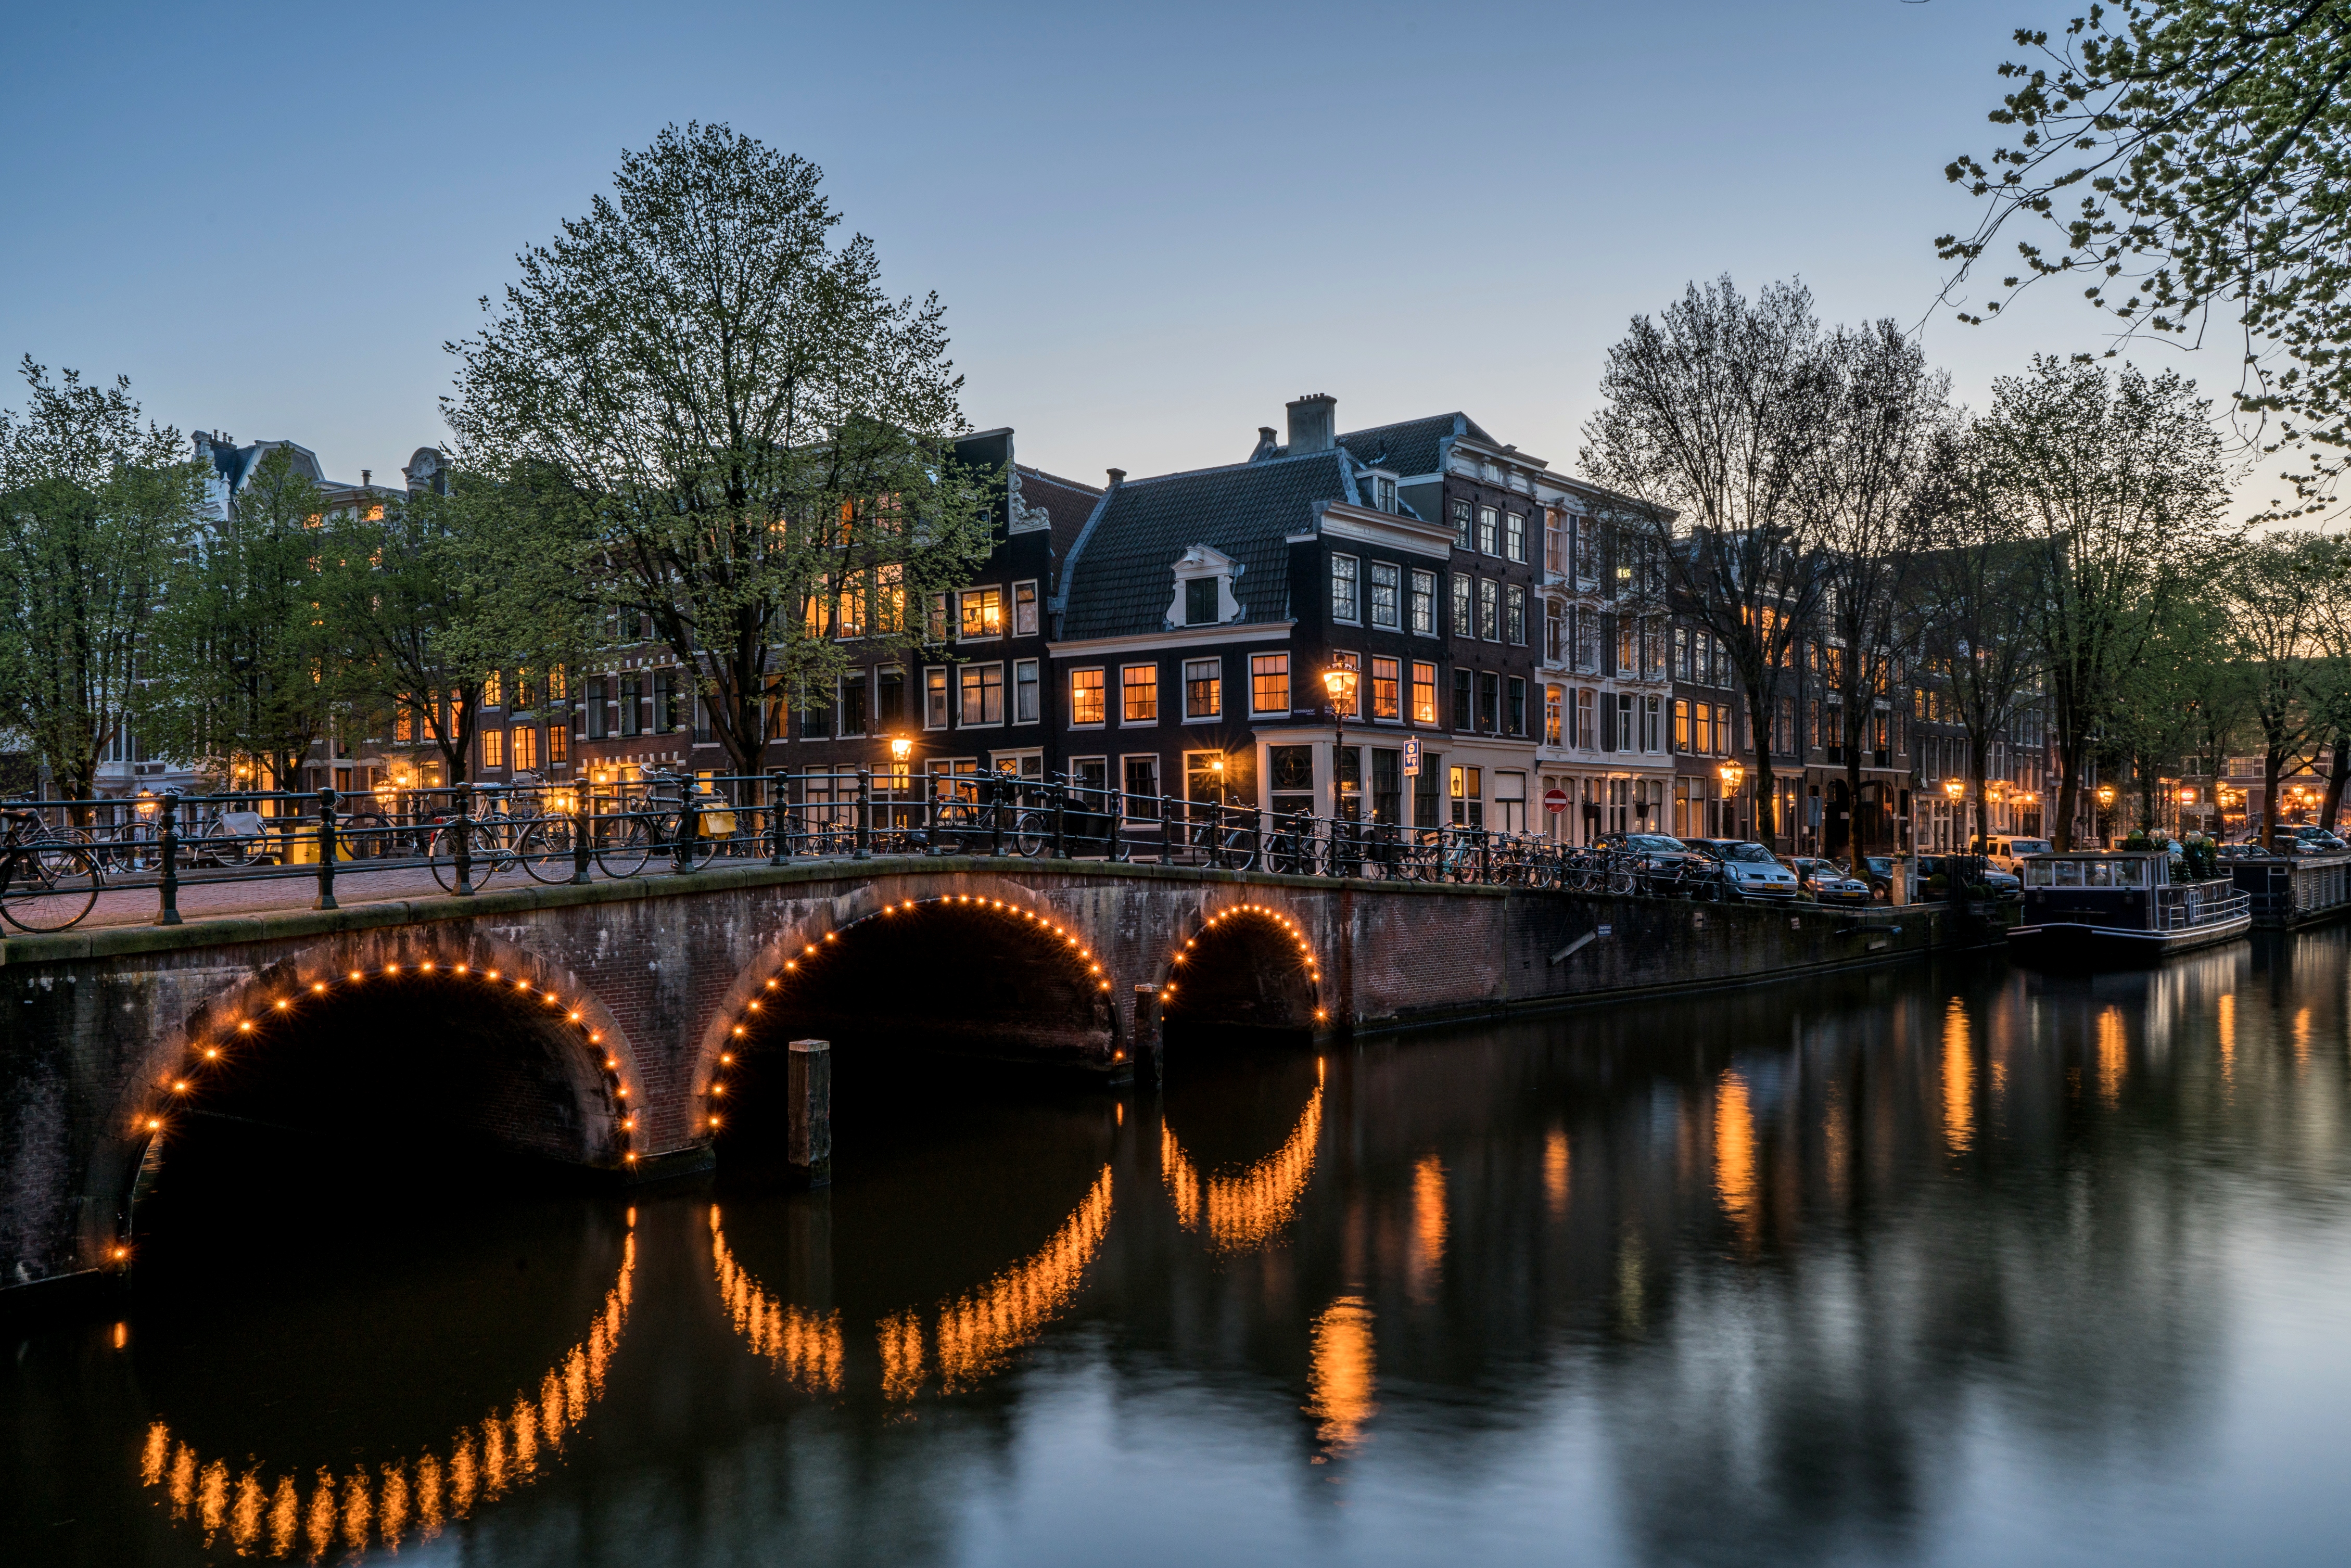 143172 скачать обои города, амстердам, канал, мост, здания, кайзерграхт - заставки и картинки бесплатно